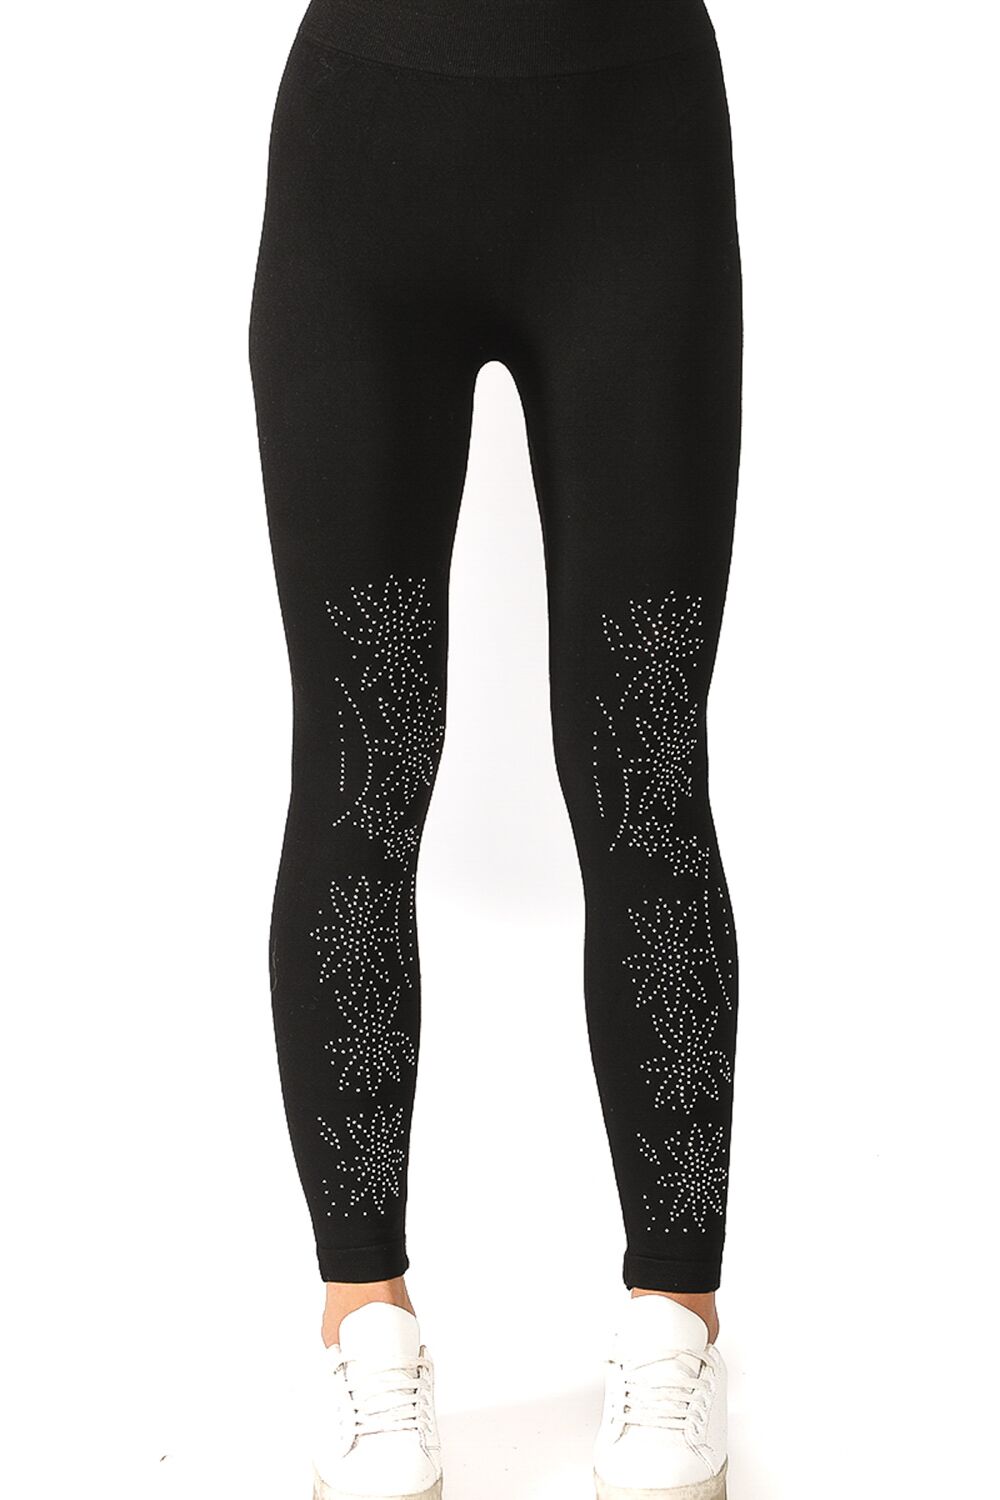 Denim Black Leggings with Embellished Lace Floral Design